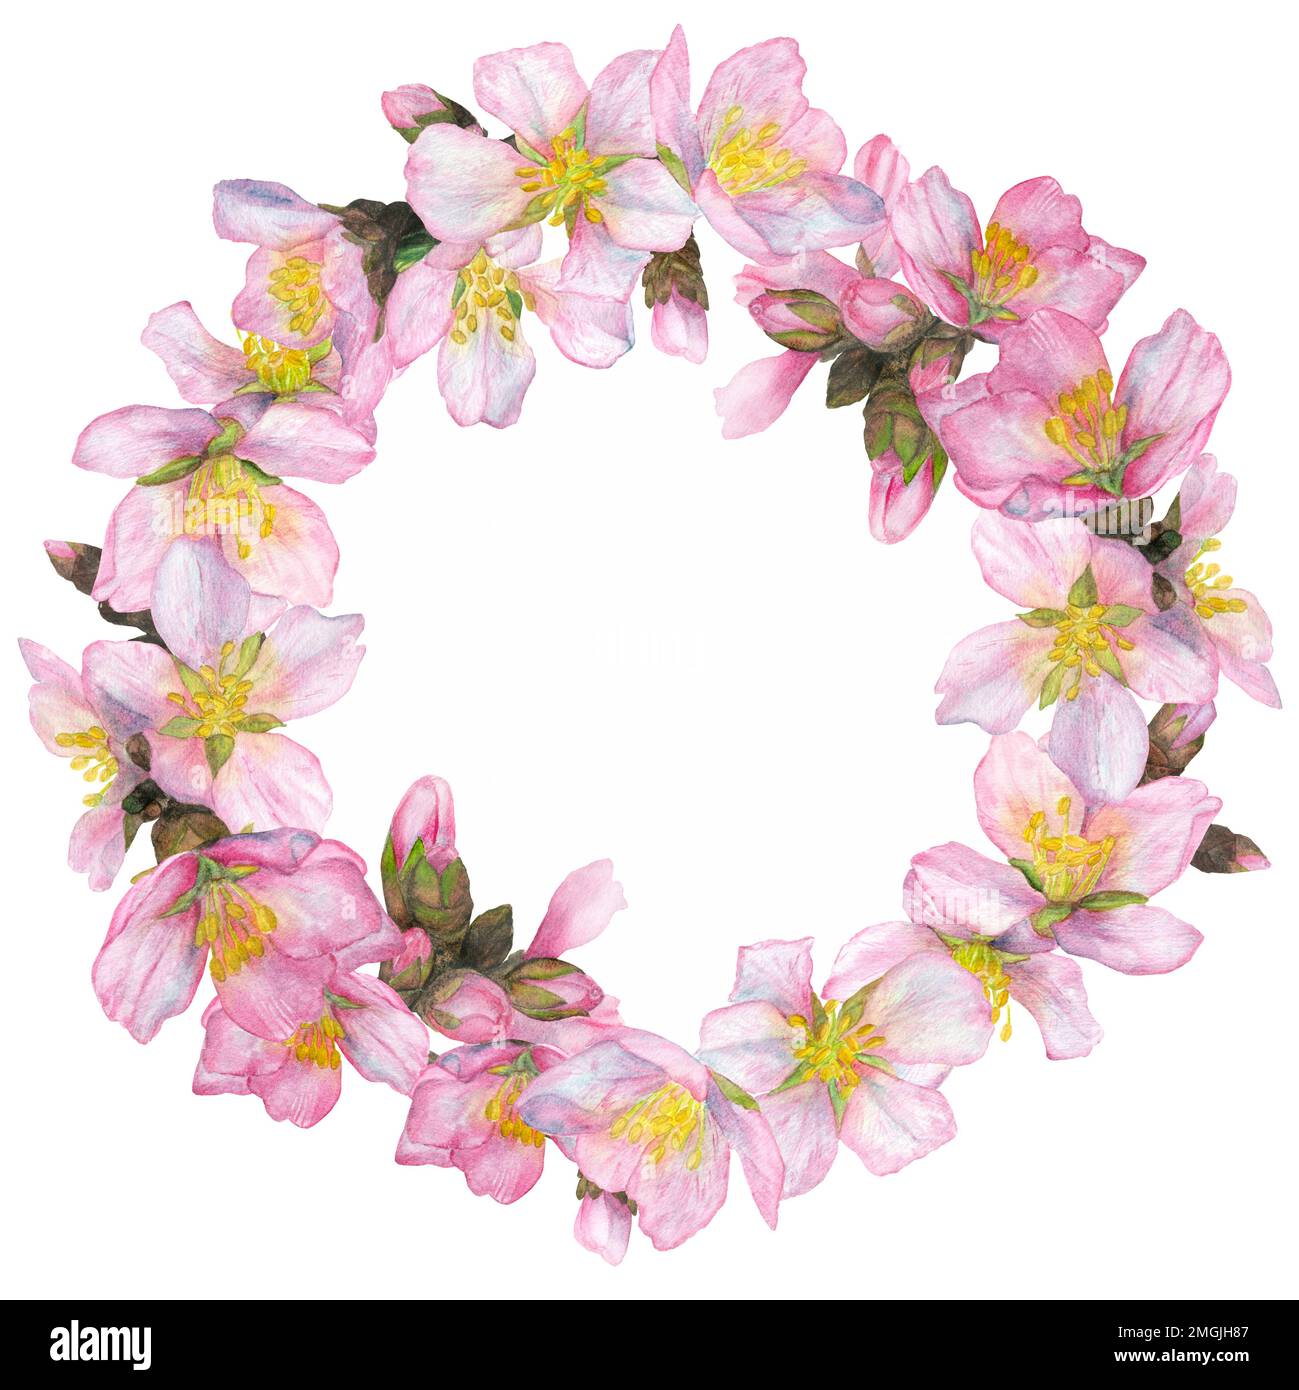 Aquarelle Darstellung, Kirschblüten in einem runden Rahmen auf weißem Hintergrund. Geeignet für das Design von Postkarten, Einladungen, Visitenkarten, Ta Stockfoto